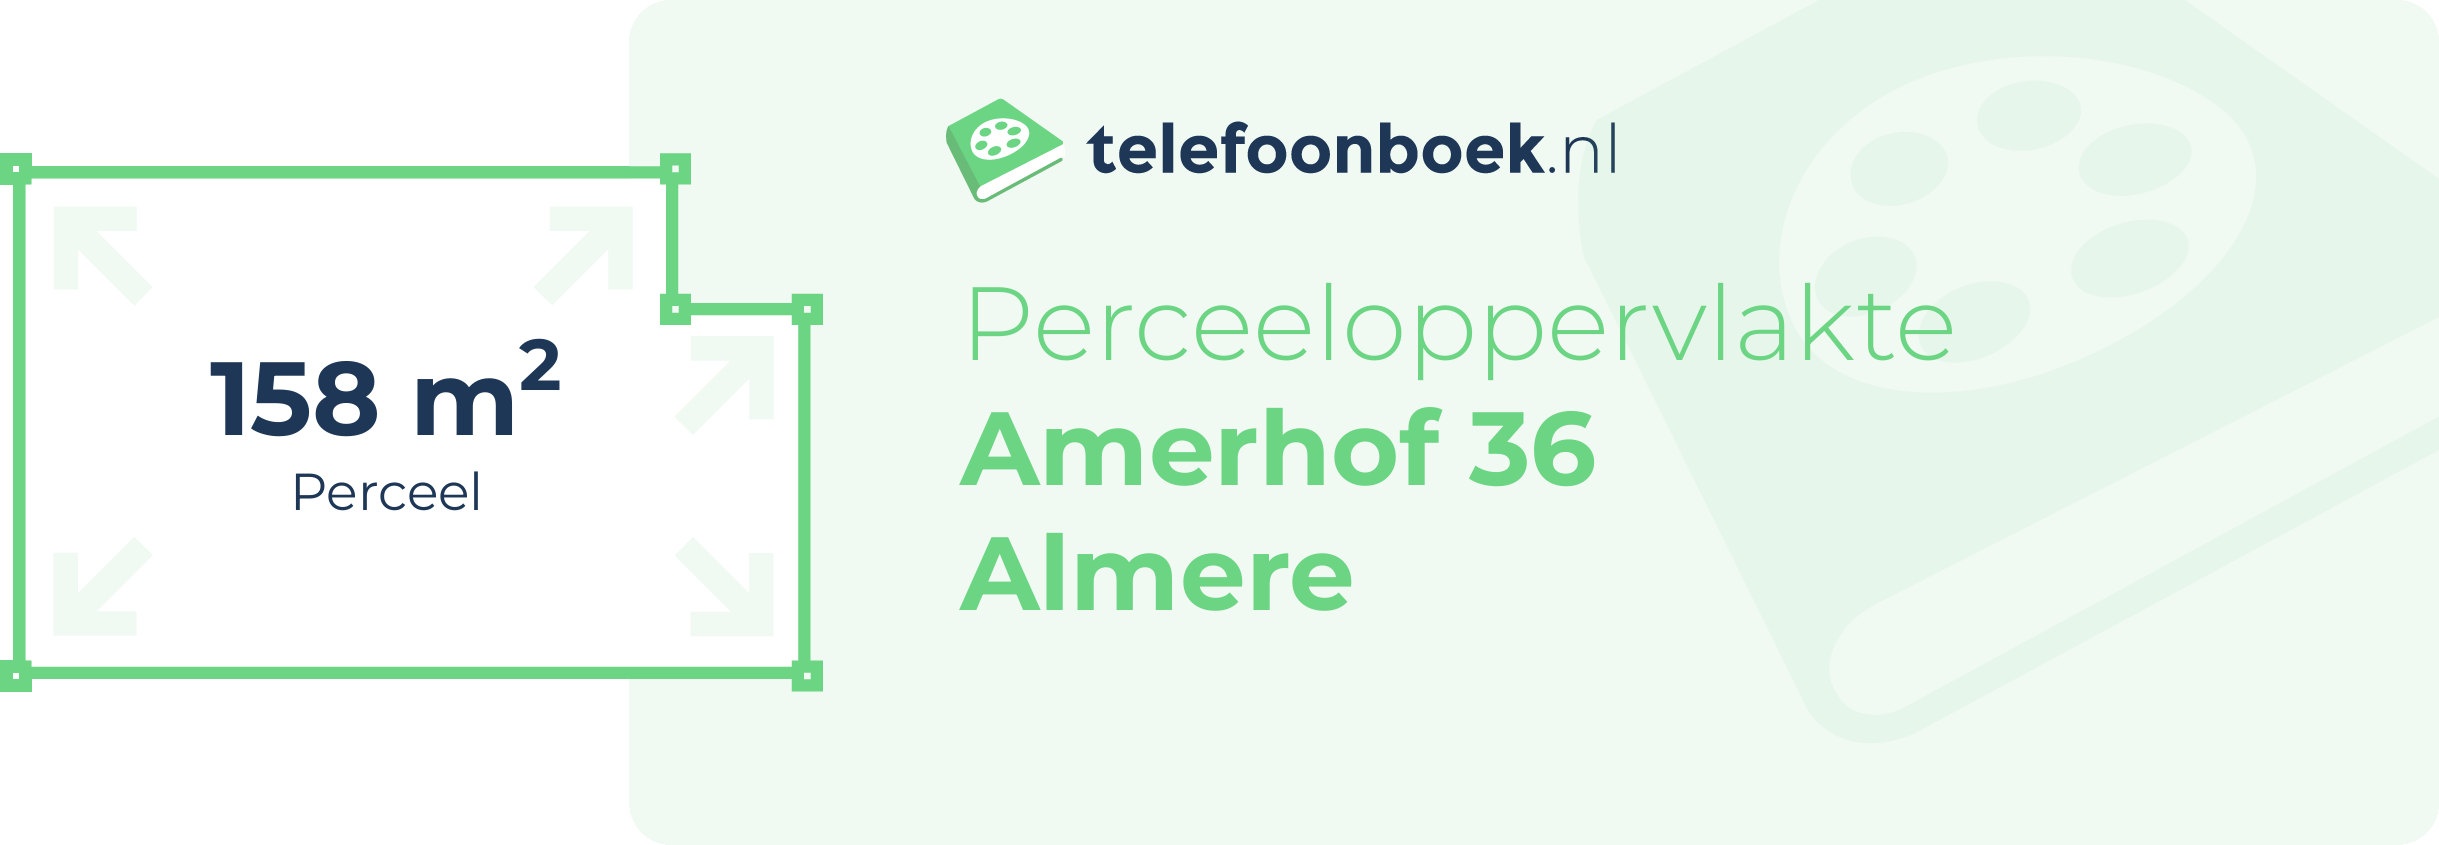 Perceeloppervlakte Amerhof 36 Almere